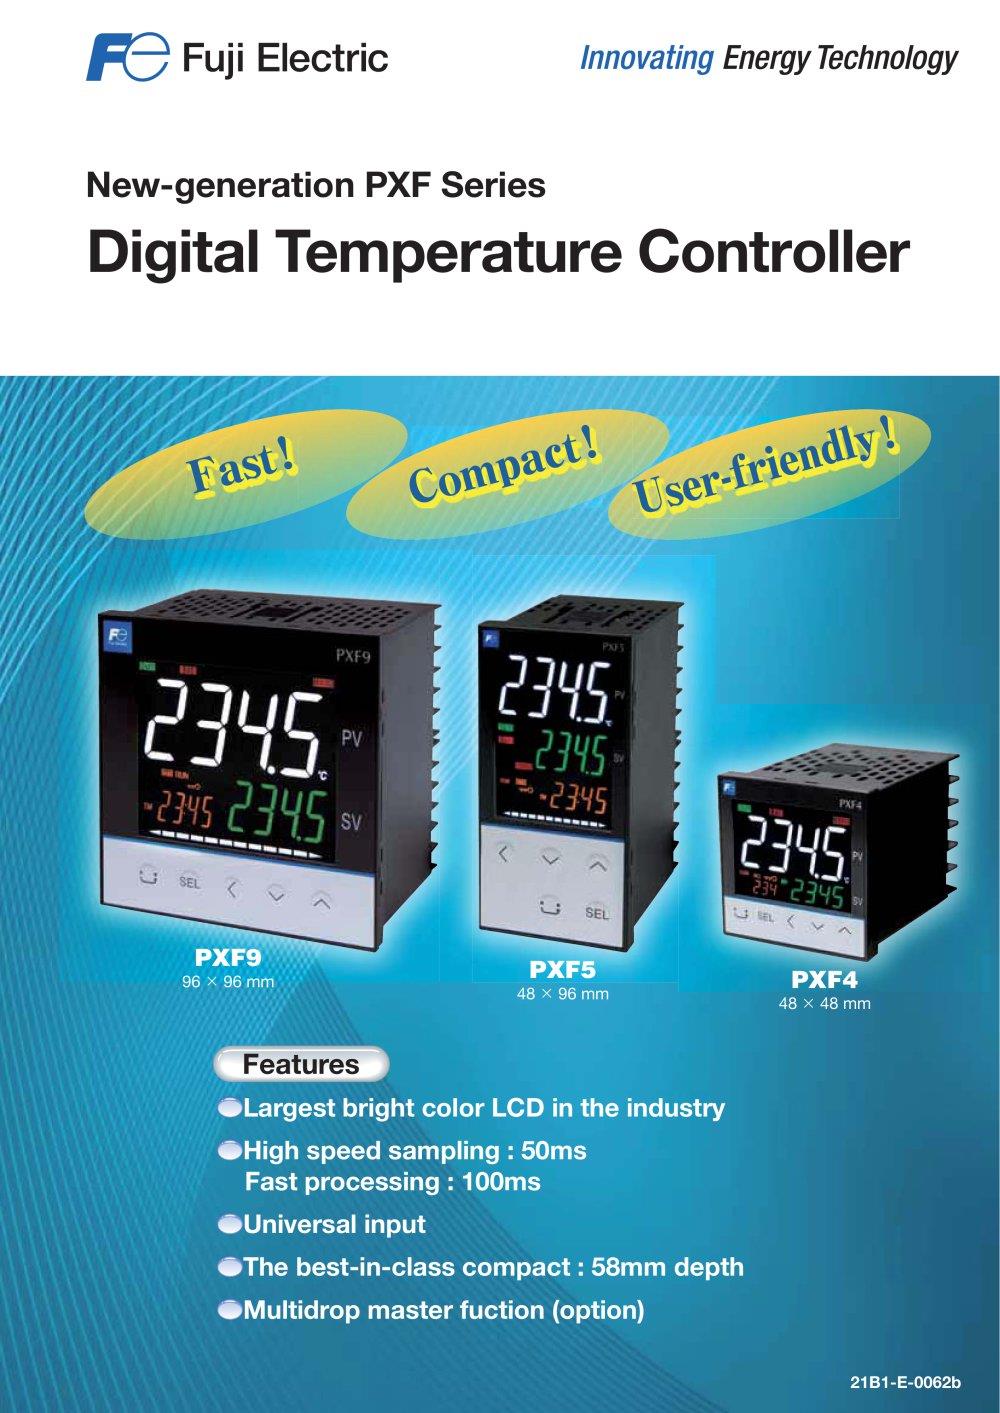 เครื่องควบคุมอุณหภูมิ (Temperature Controller) PXF